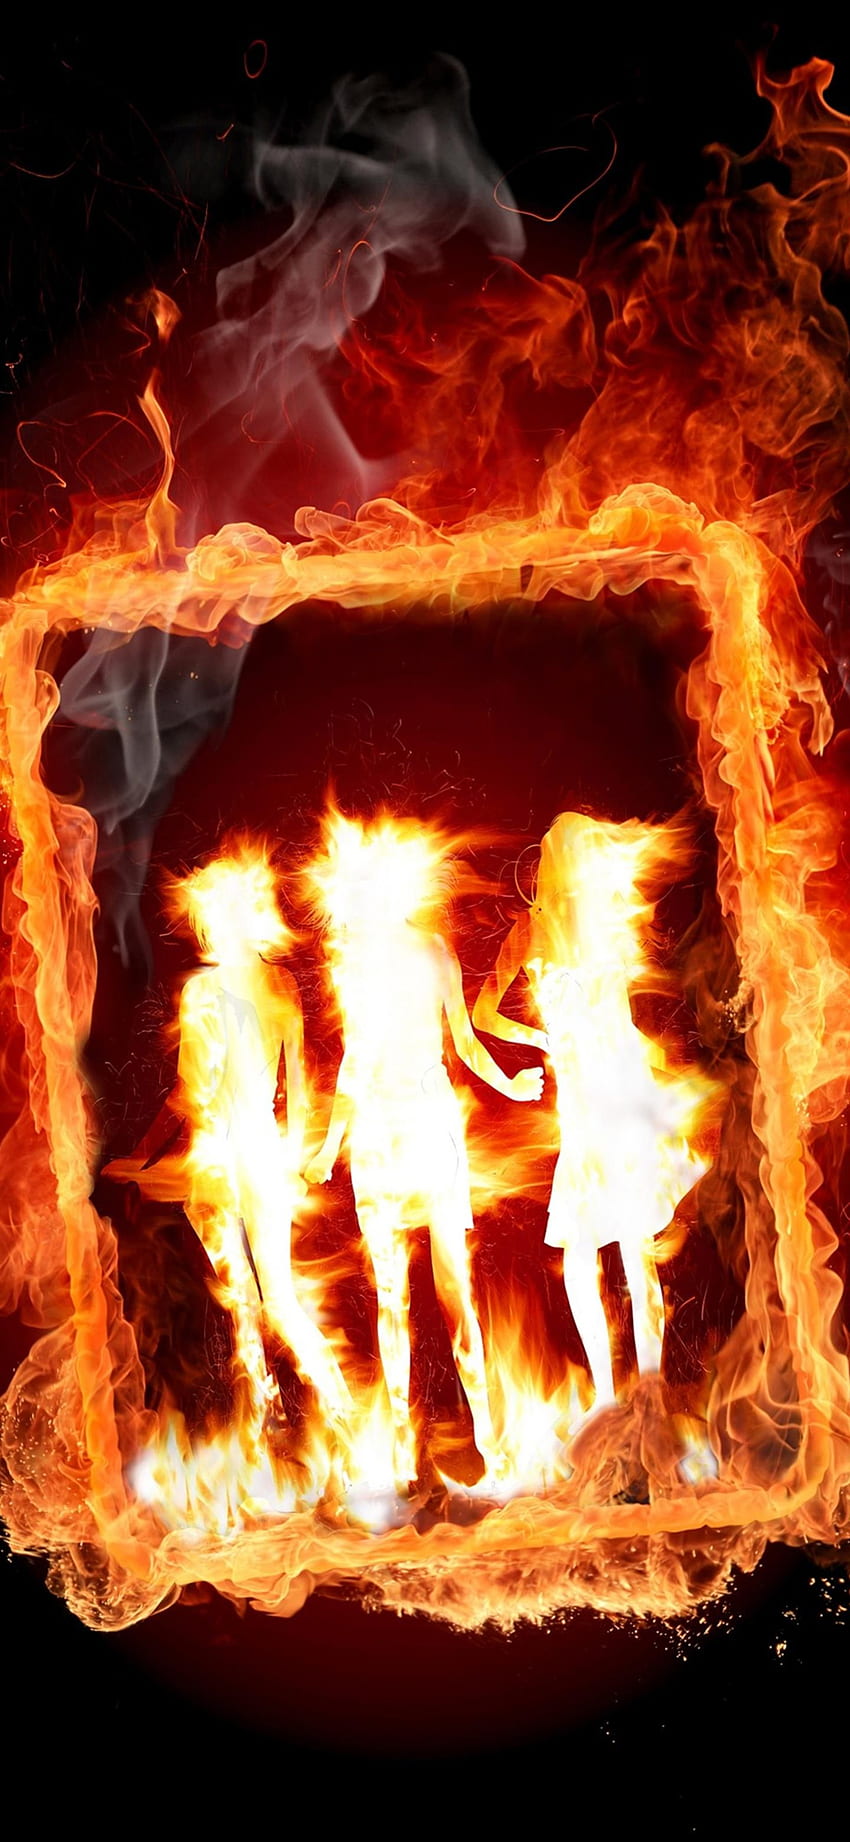 Moldura de garota em chamas - telefone Android Papel de parede de celular HD